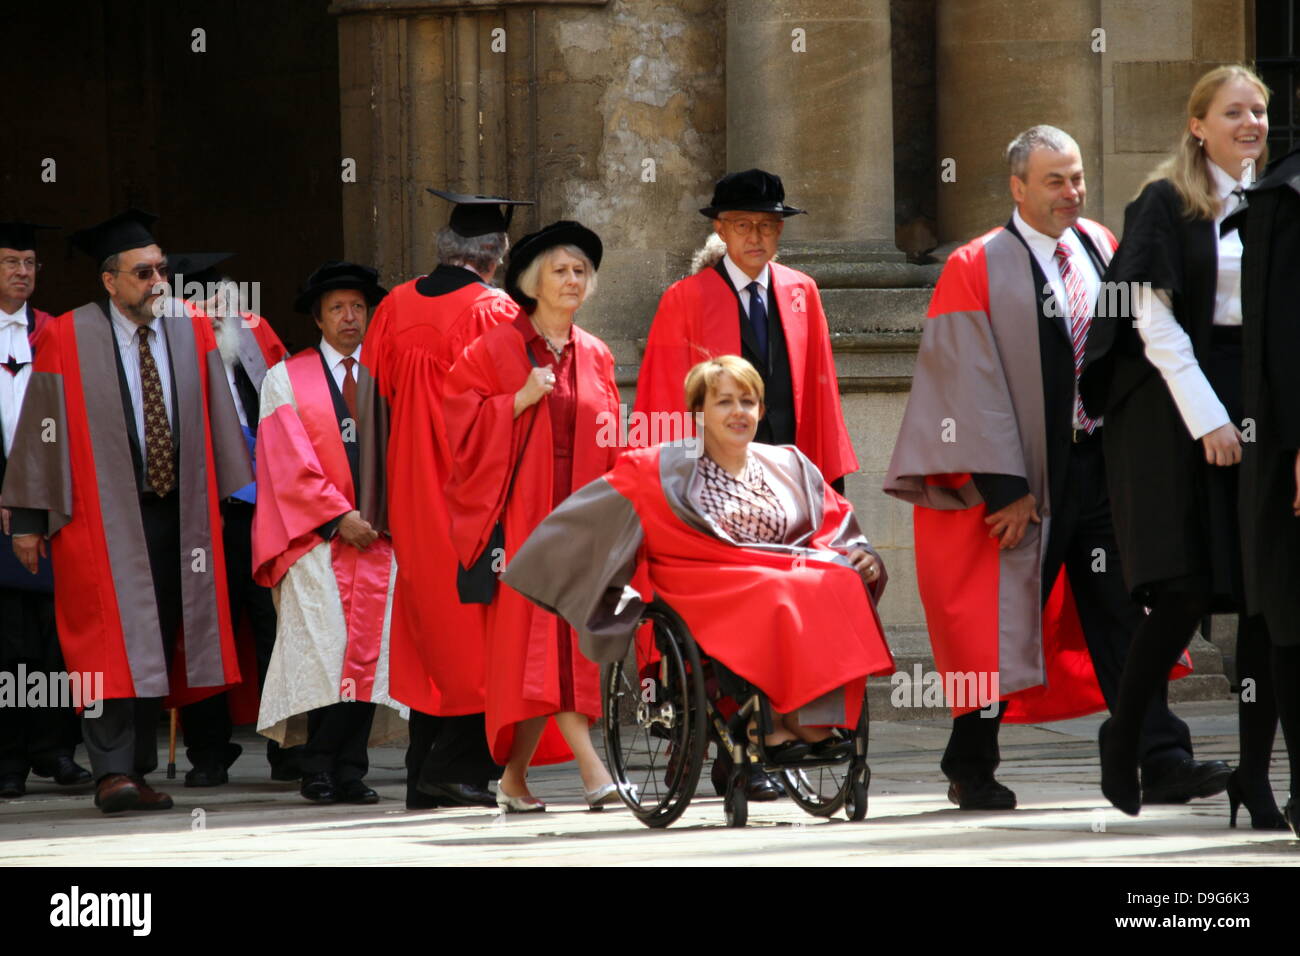 Oxford, UK. 19 juin 2013. Tanni Grey-Thompson en procession avec autre honorands de recevoir un doctorat honorifique à l'université d'oxford aujourd'hui. petericardo lusabia : crédit/Alamy live news Banque D'Images